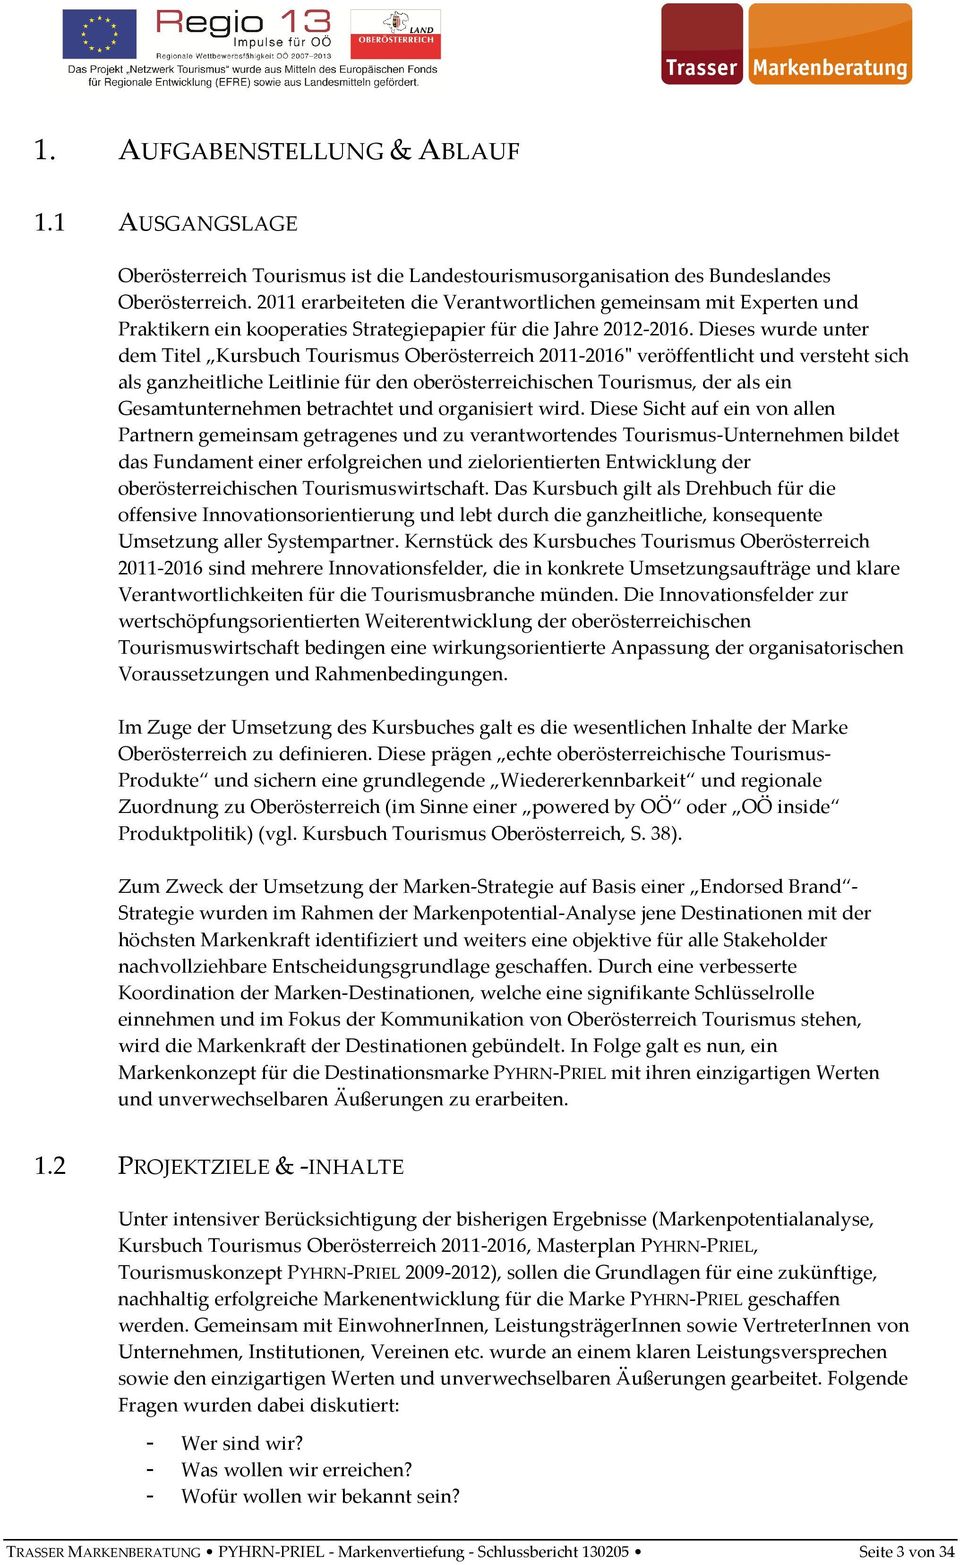 Dieses wurde unter dem Titel Kursbuch Tourismus Oberösterreich 2011-2016" veröffentlicht und versteht sich als ganzheitliche Leitlinie für den oberösterreichischen Tourismus, der als ein